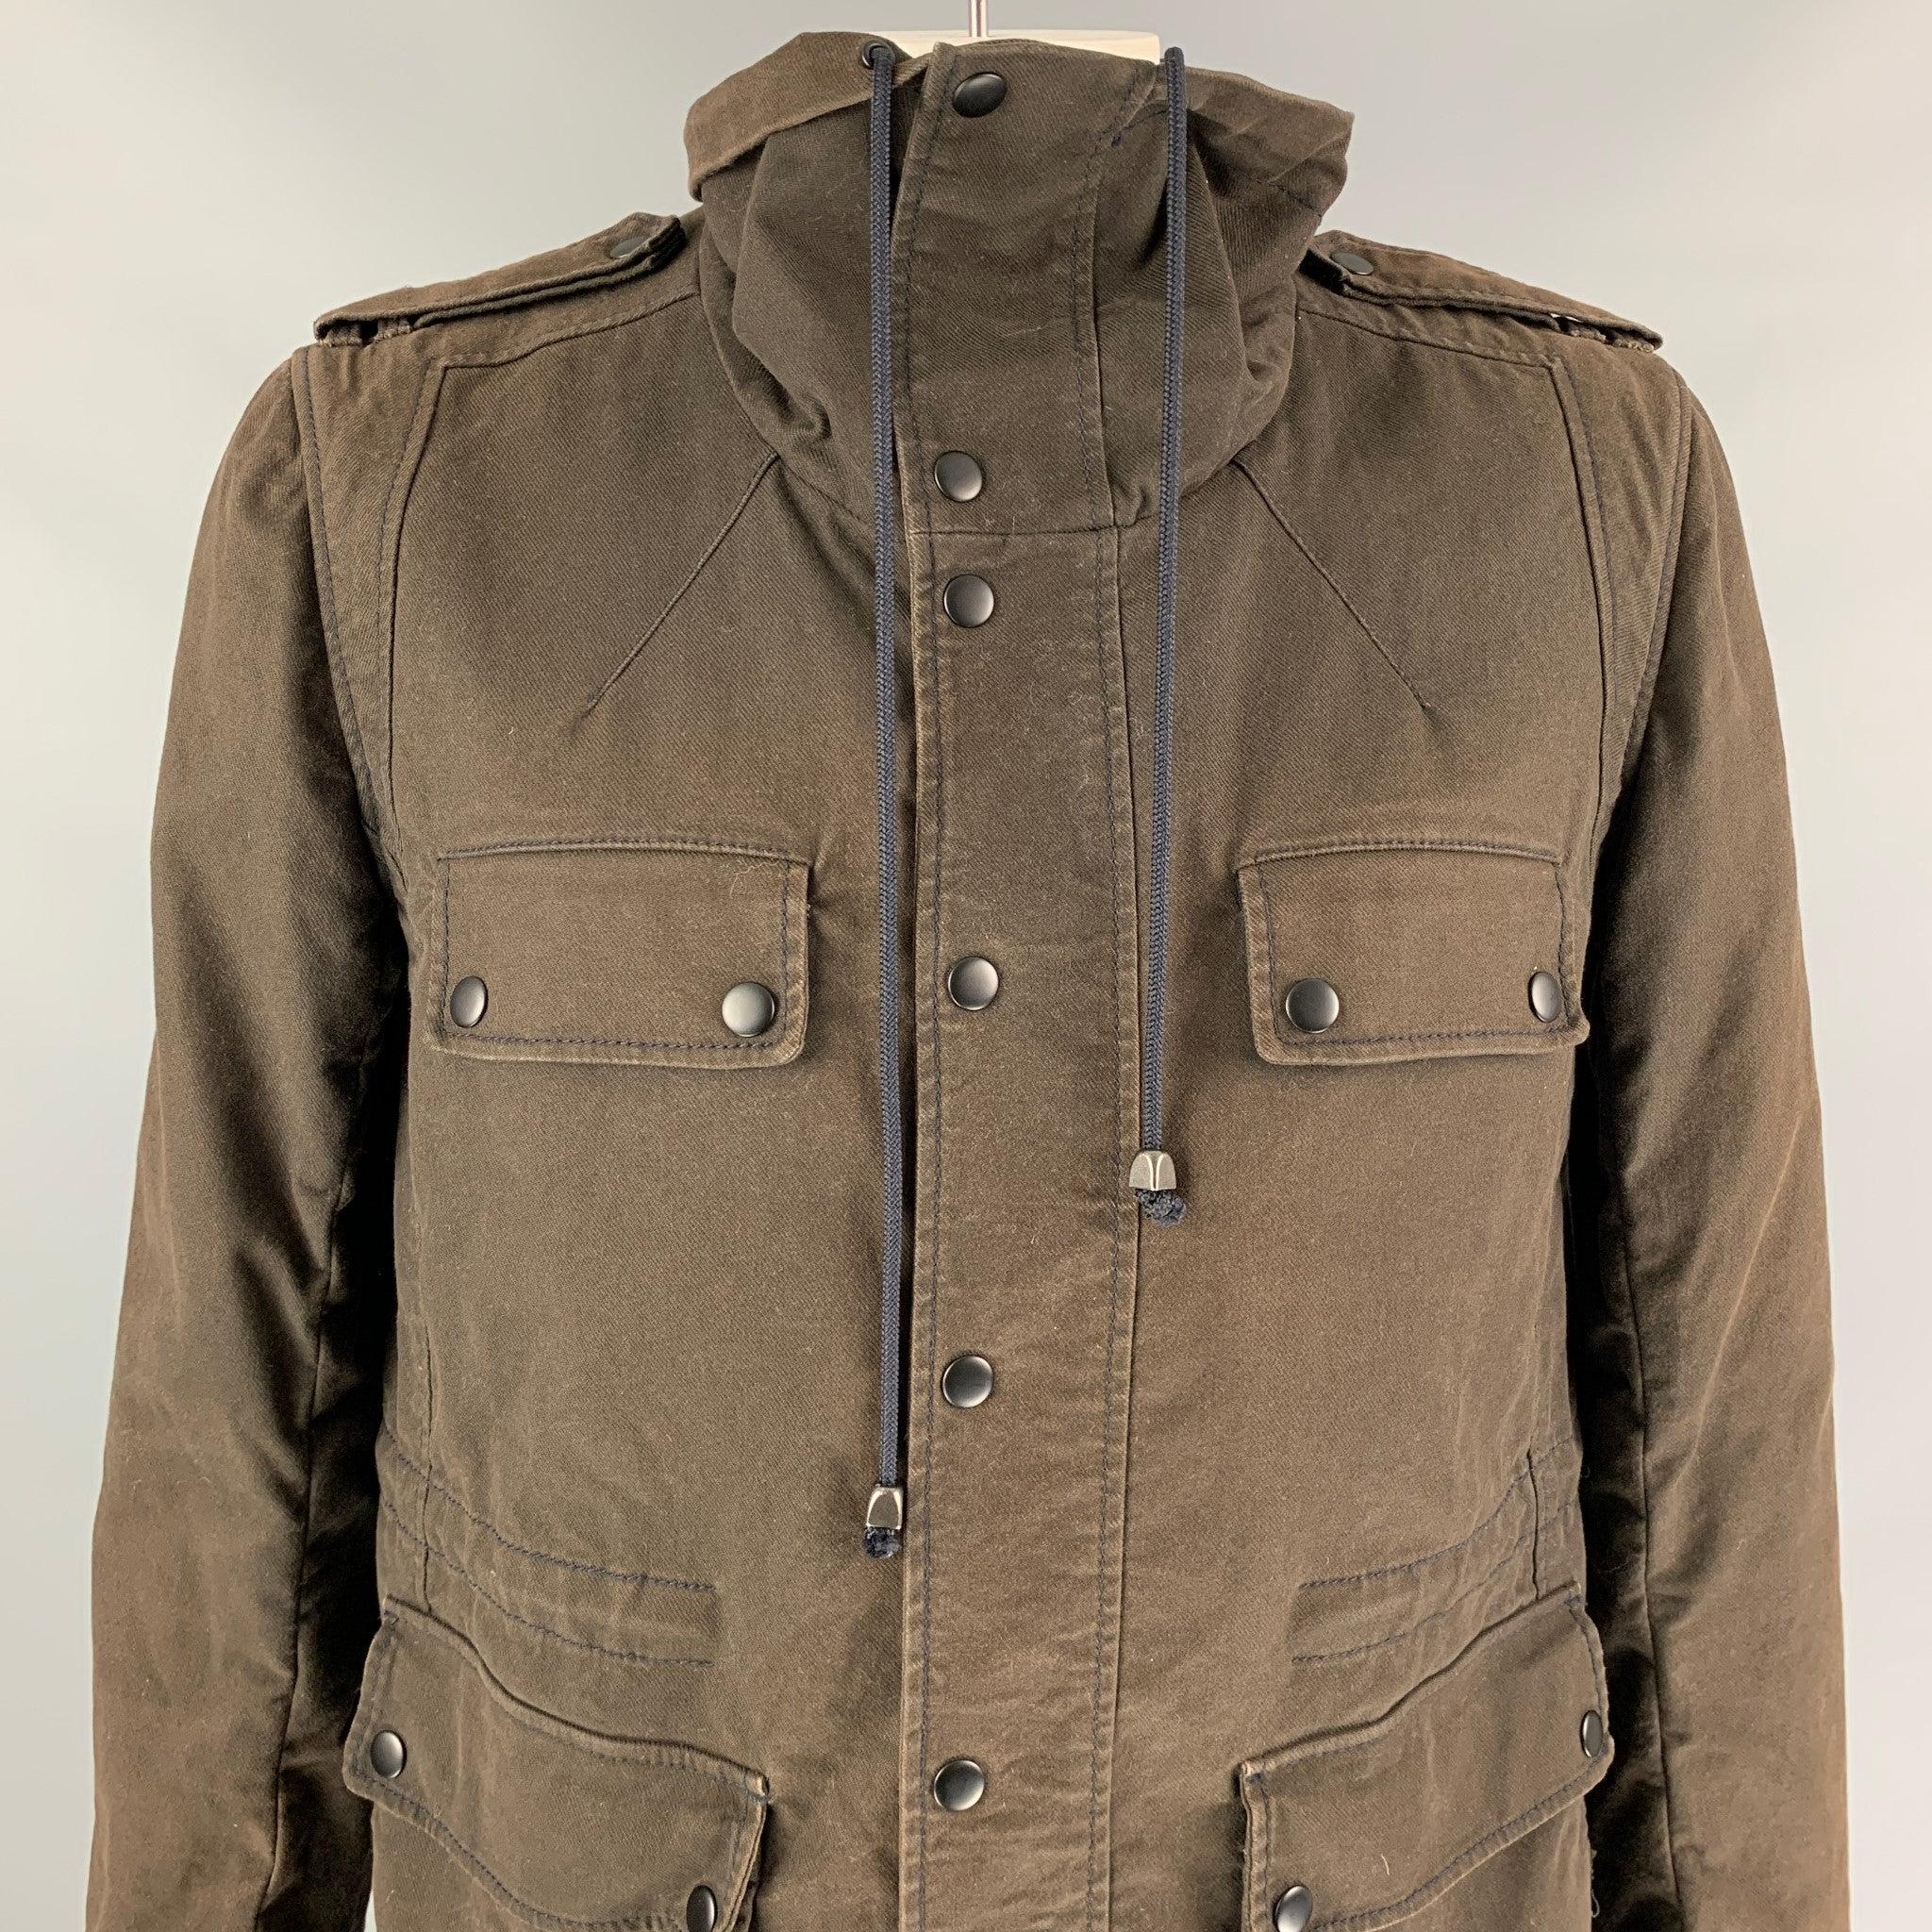 Le manteau de 3.1 PHILLIP LIM est en coton marron avec une doublure intégrale. Il présente un col montant, un style utilitaire, des poches avant, un cordon de serrage, des épaulettes et une fermeture à bouton-pression.
Très bien
Etat d'occasion.